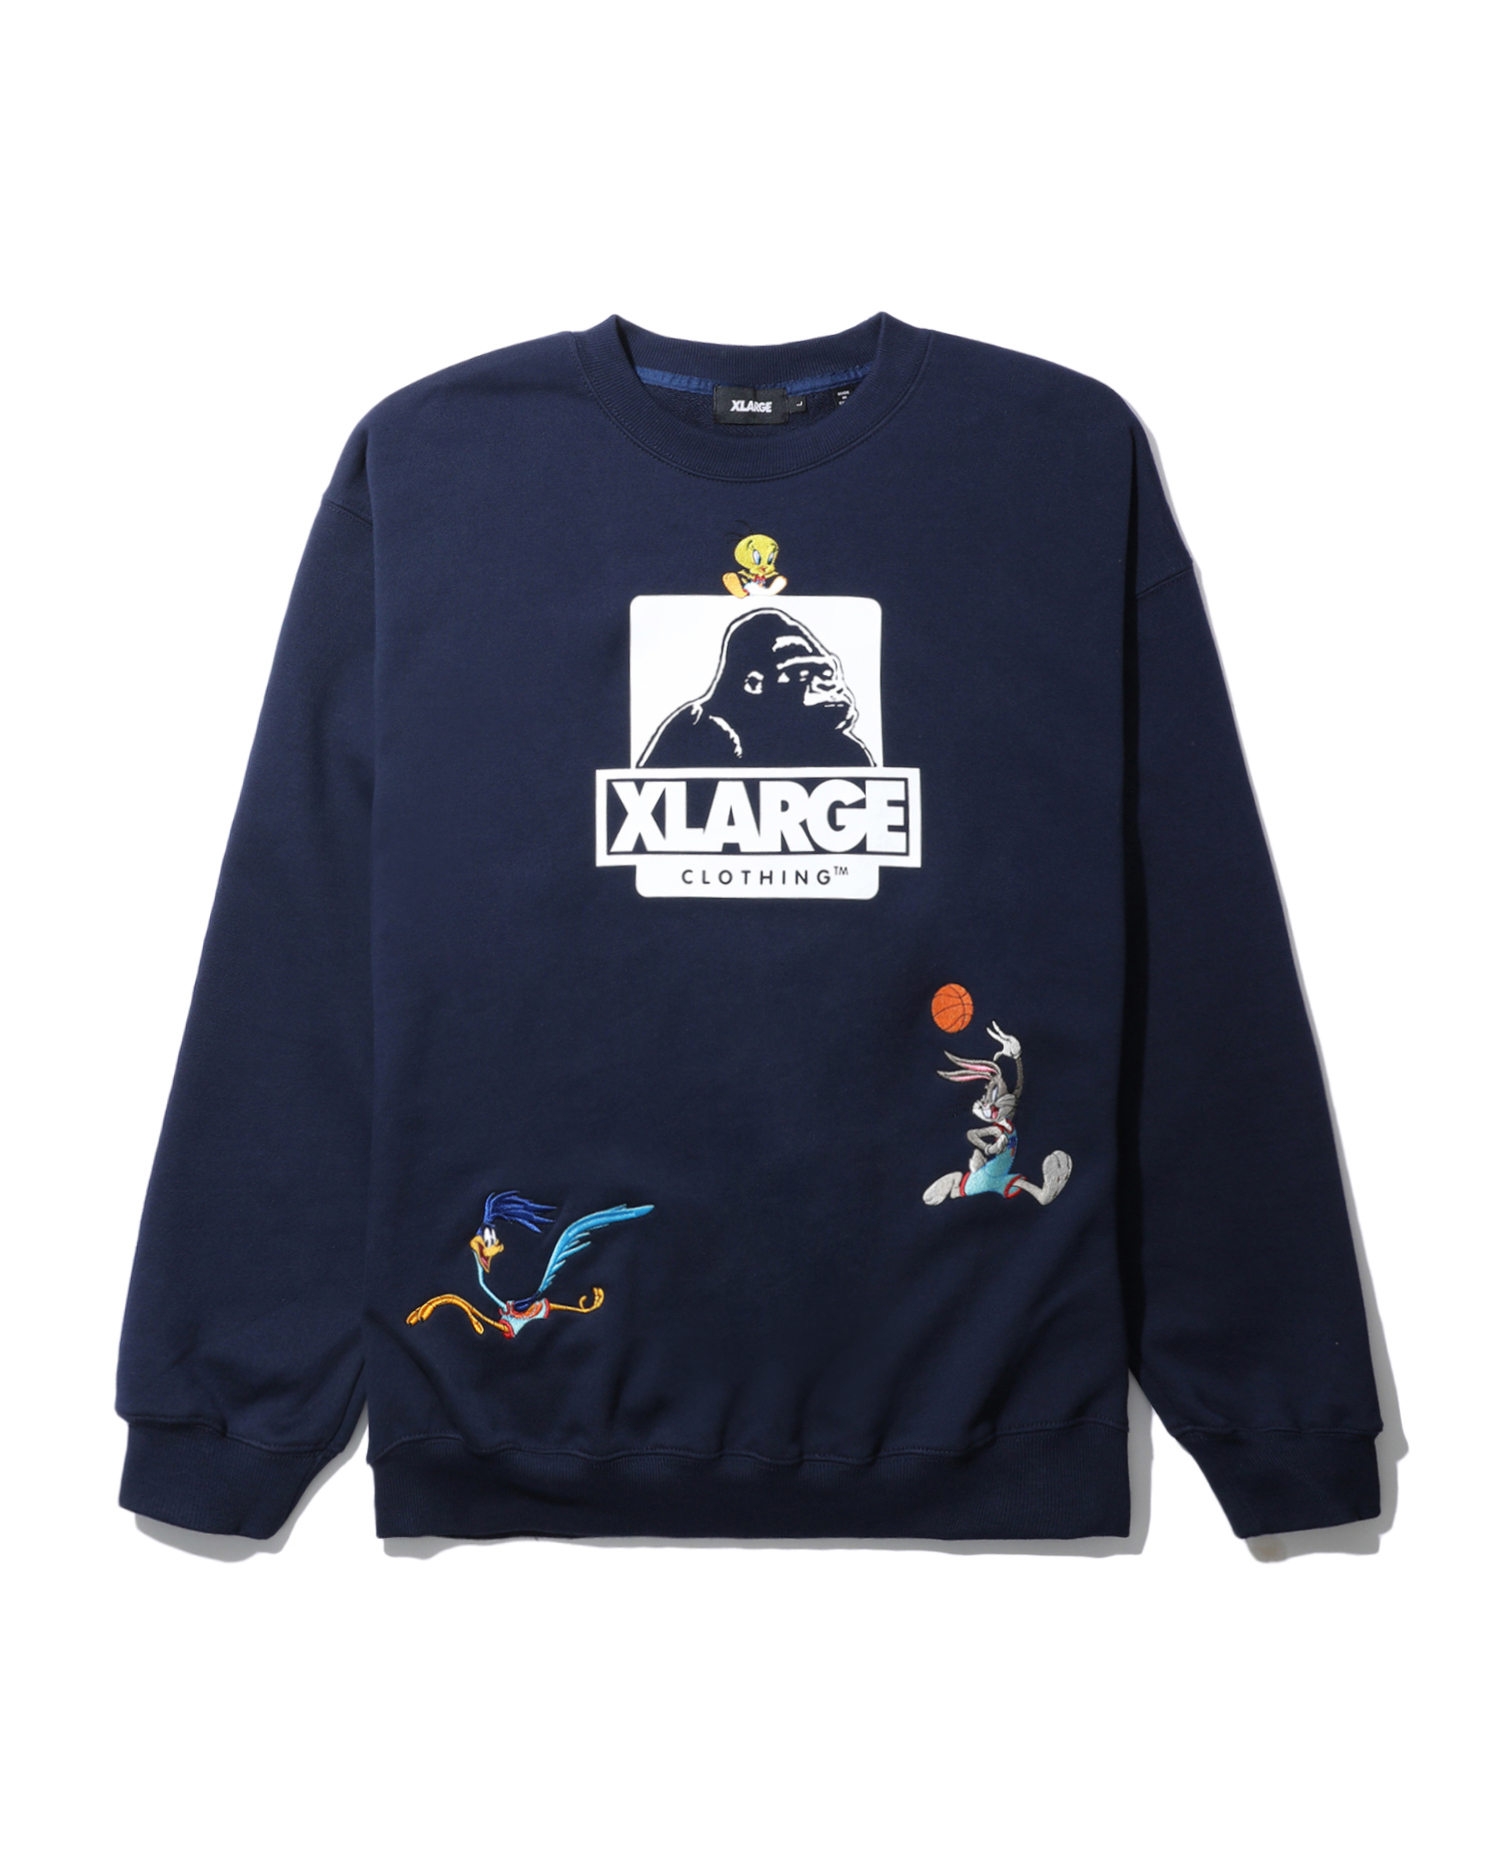 XLARGE® X Space Jam Tweety sweatshirt | ITeSHOP